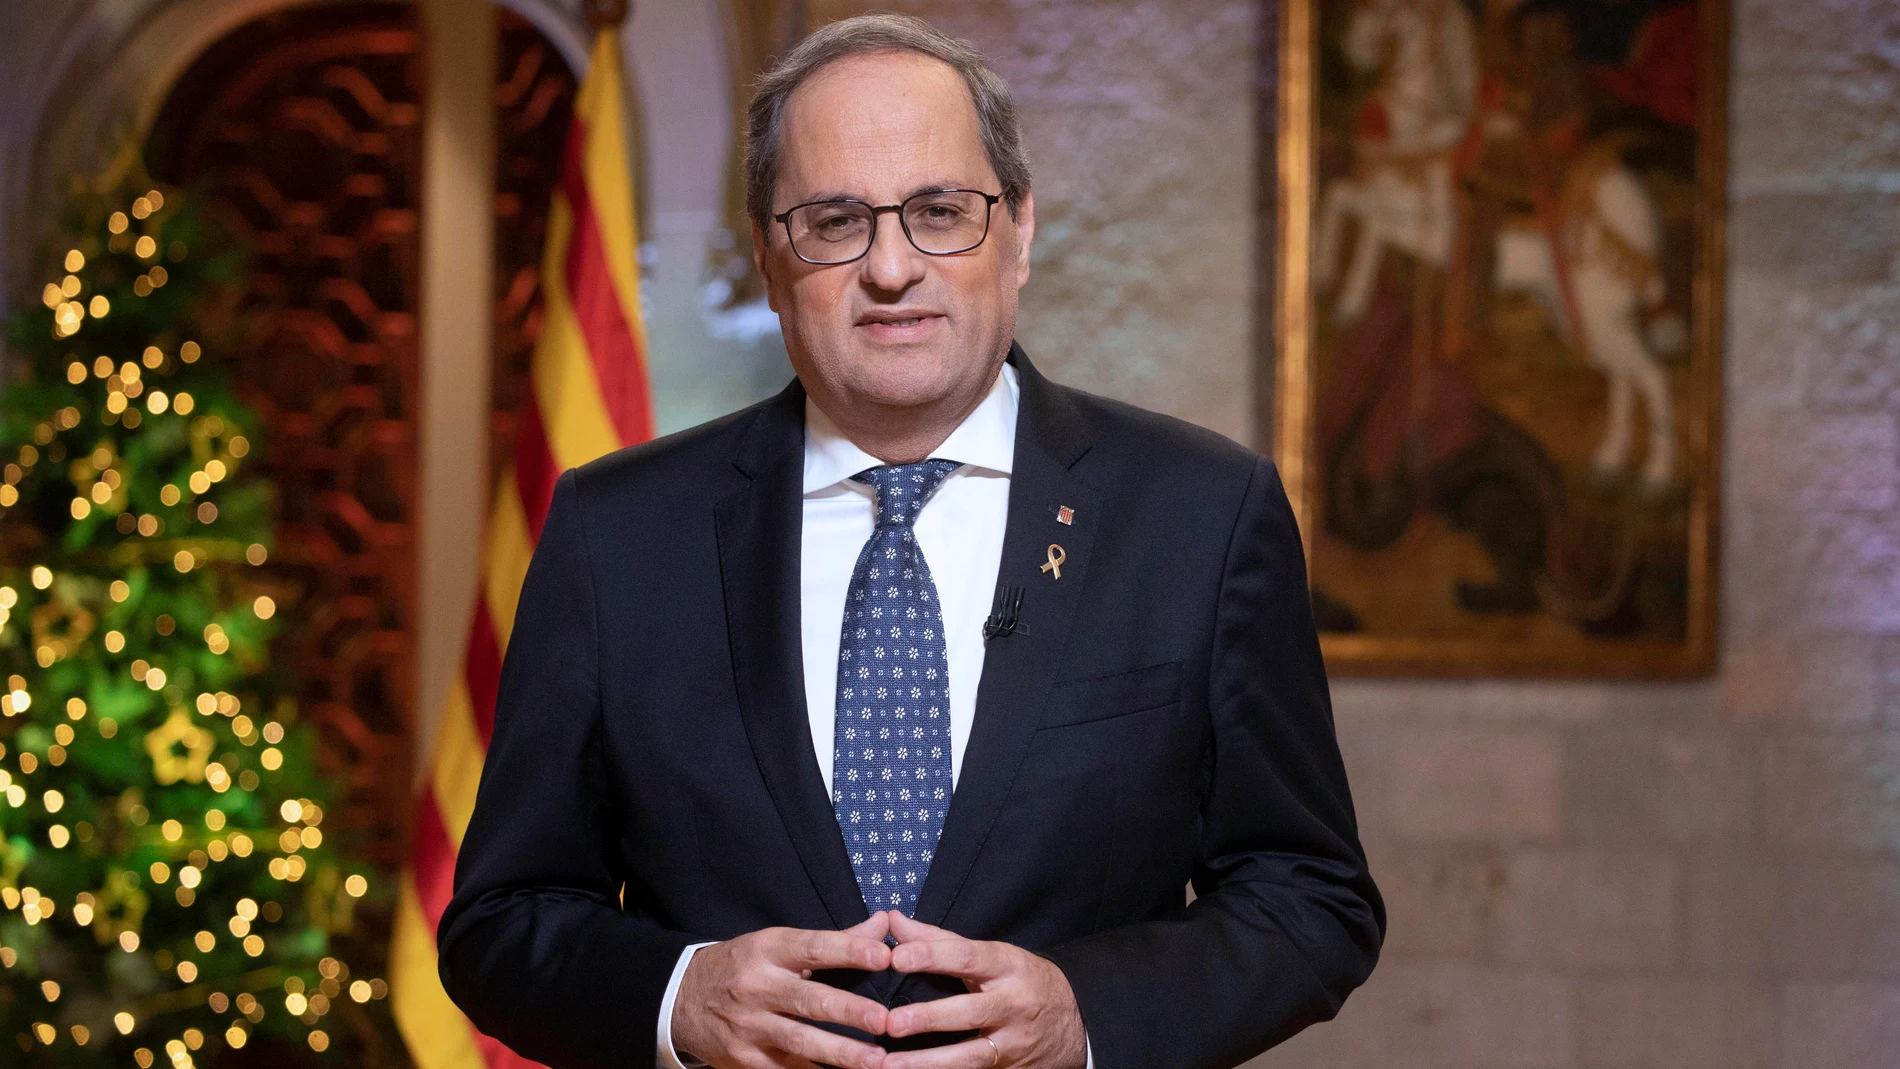 El president Quim Torra en el discurso navideño desde el Palau de la Generalitat